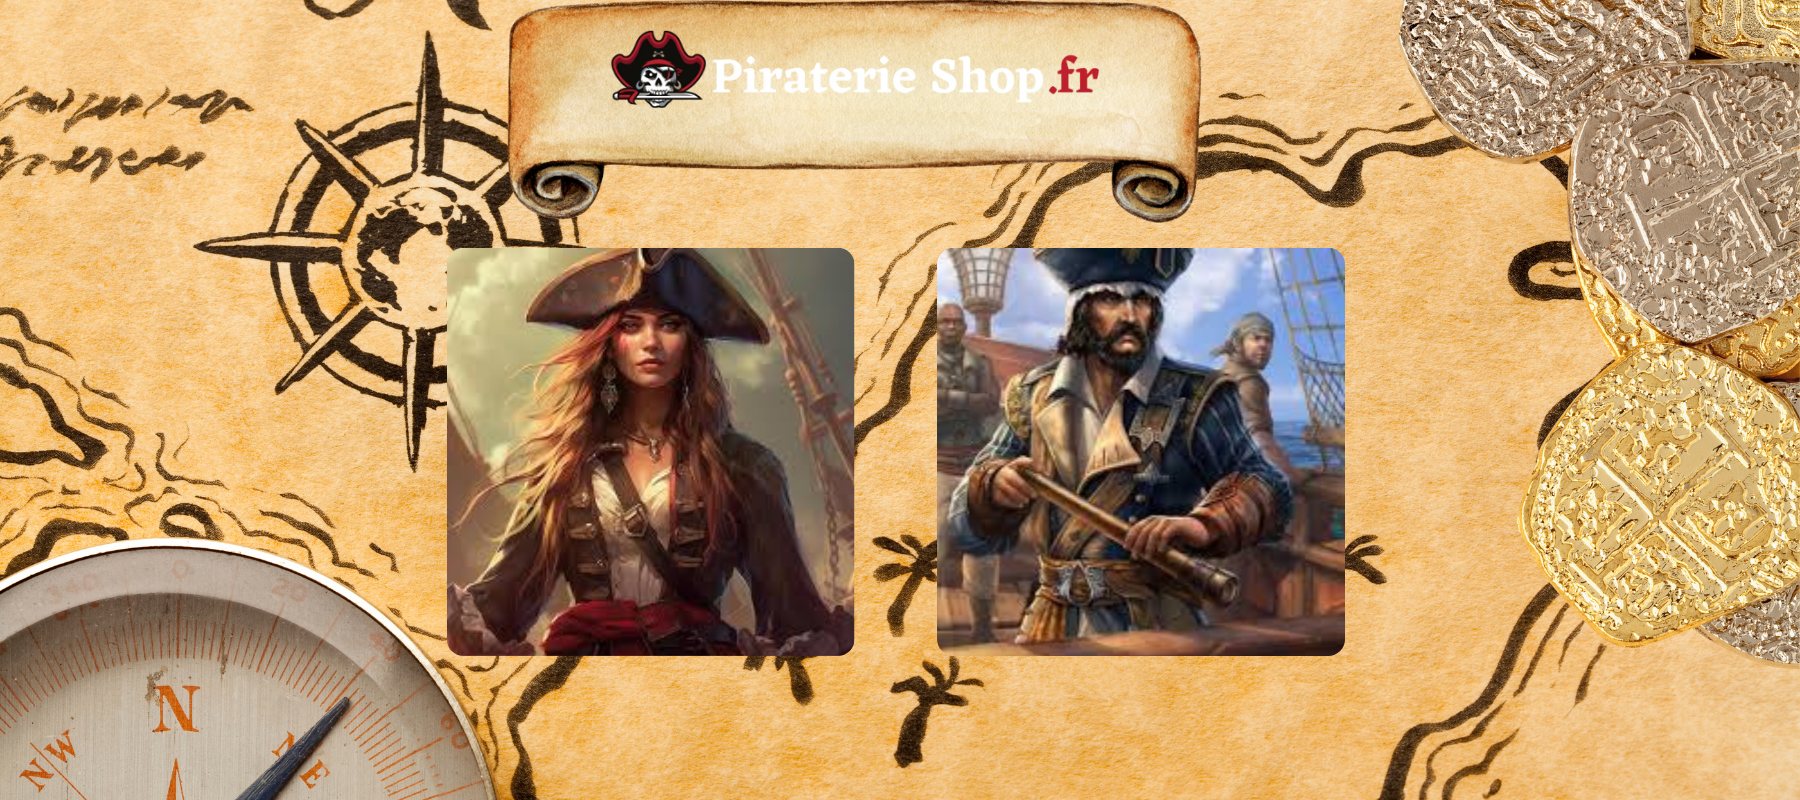 2 pirates qui ont navigues sous le pavillon Jolly Roger